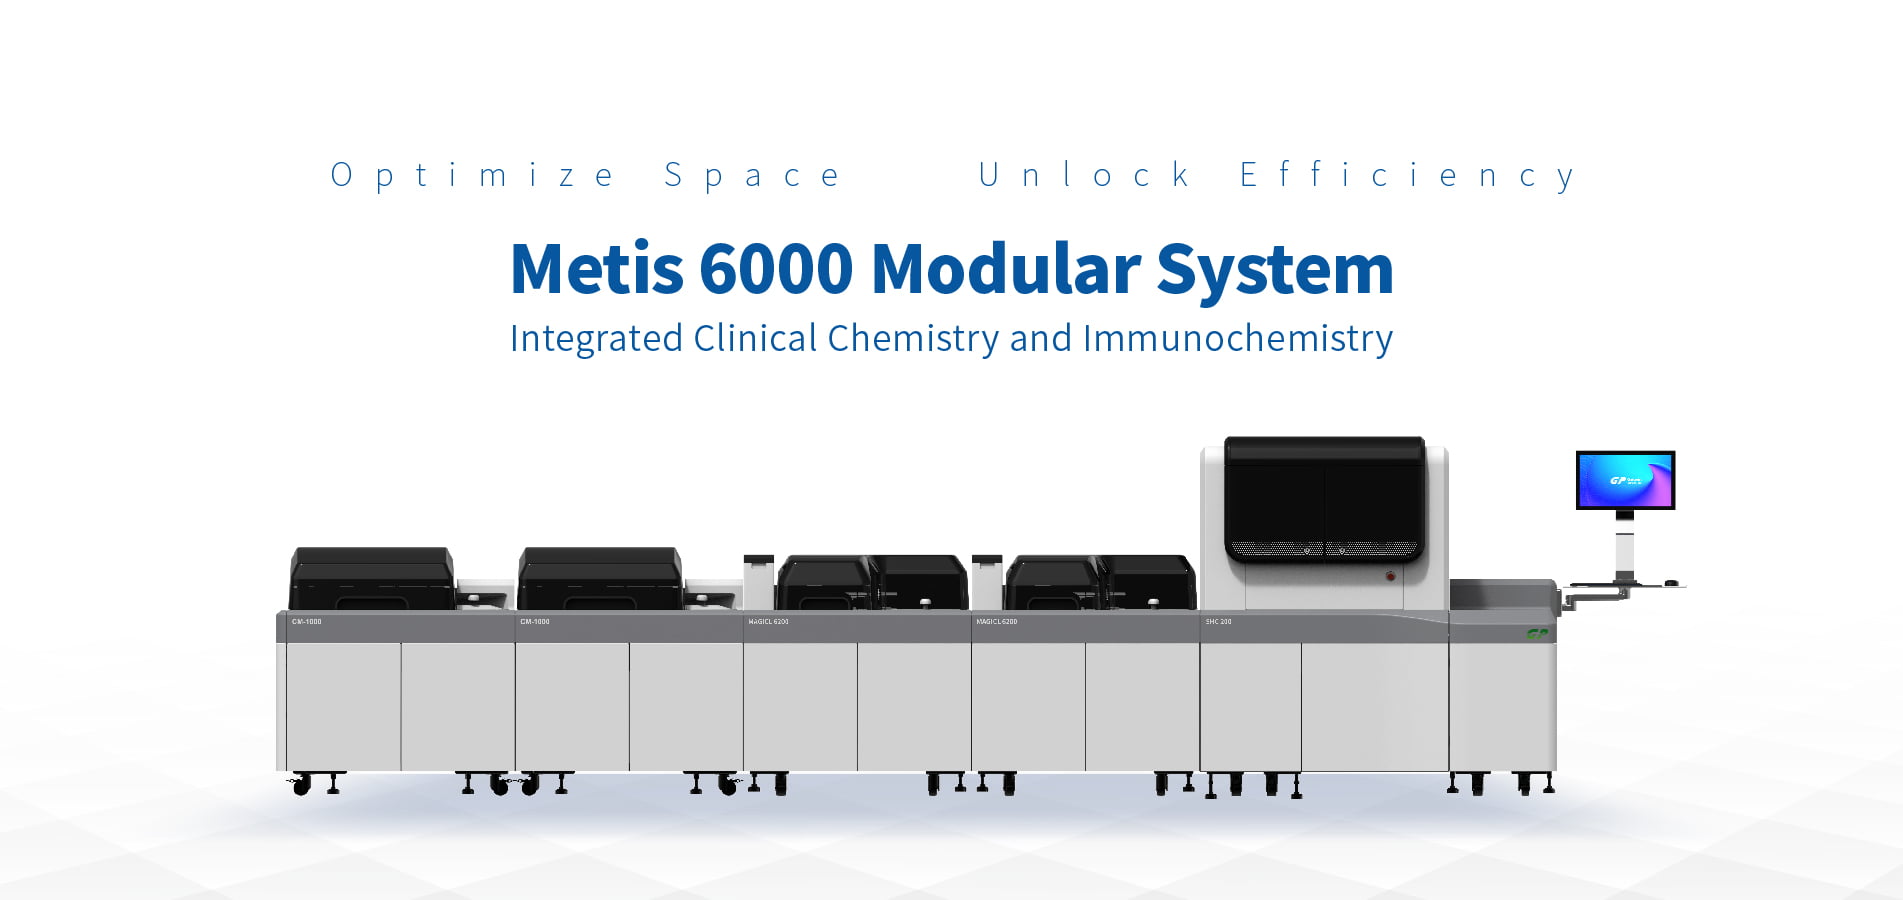 Hacer que el sistema modular sea accesible para más laboratorios: Metis 6000 satisface sus necesidades